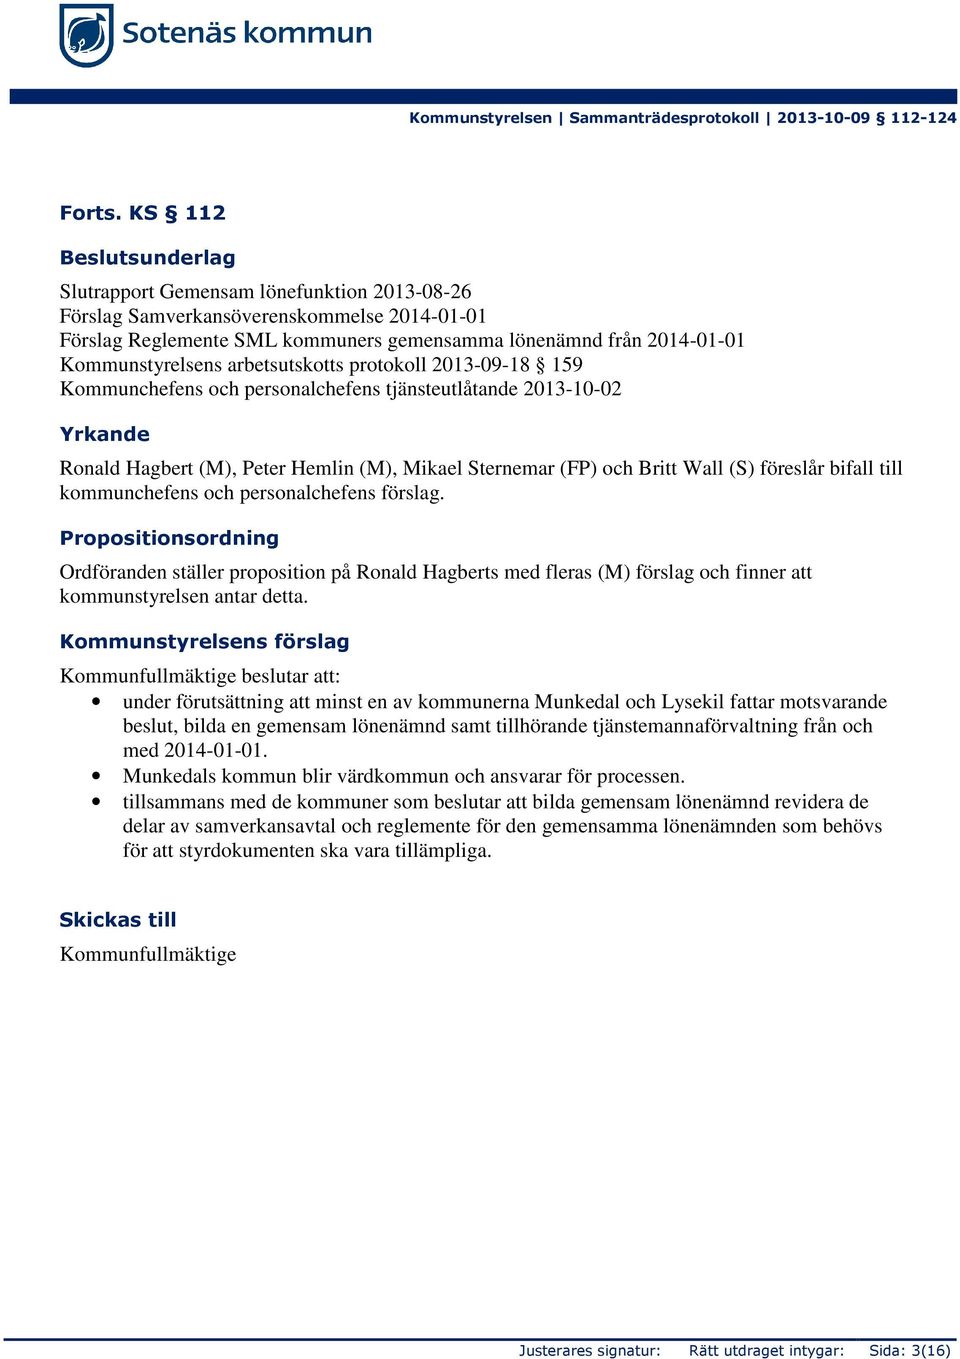 arbetsutskotts protokoll 2013-09-18 159 Kommunchefens och personalchefens tjänsteutlåtande 2013-10-02 Yrkande Ronald Hagbert (M), Peter Hemlin (M), Mikael Sternemar (FP) och Britt Wall (S) föreslår